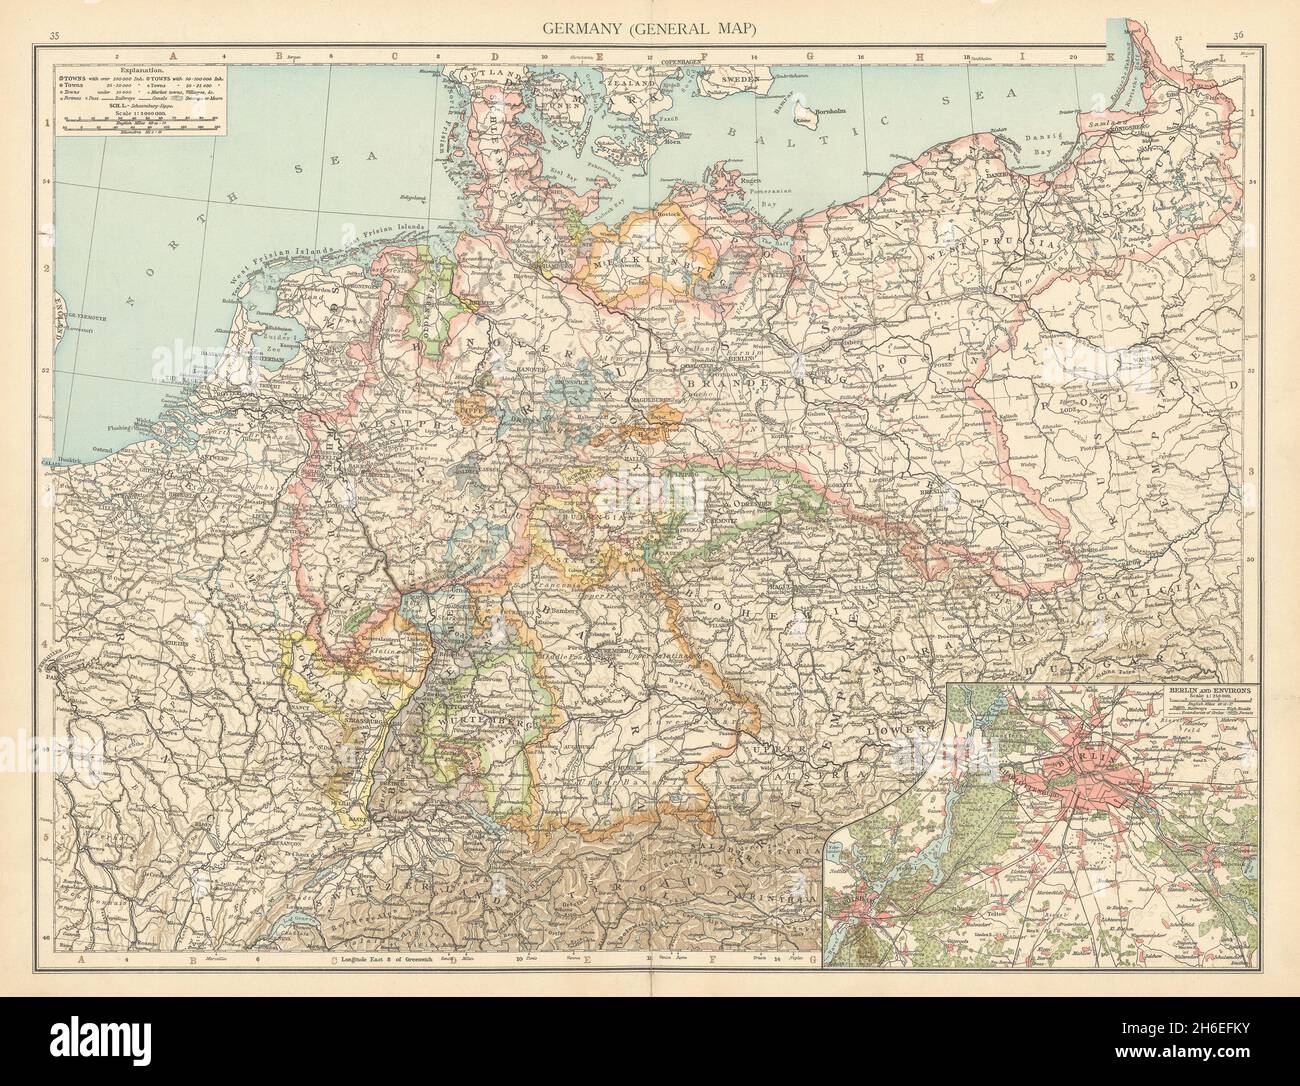 Alemania. Polonia Prusia. Alrededores de Berlín. Benelux. El MAPA ANTIGUO DE TIMES 1895 Foto de stock